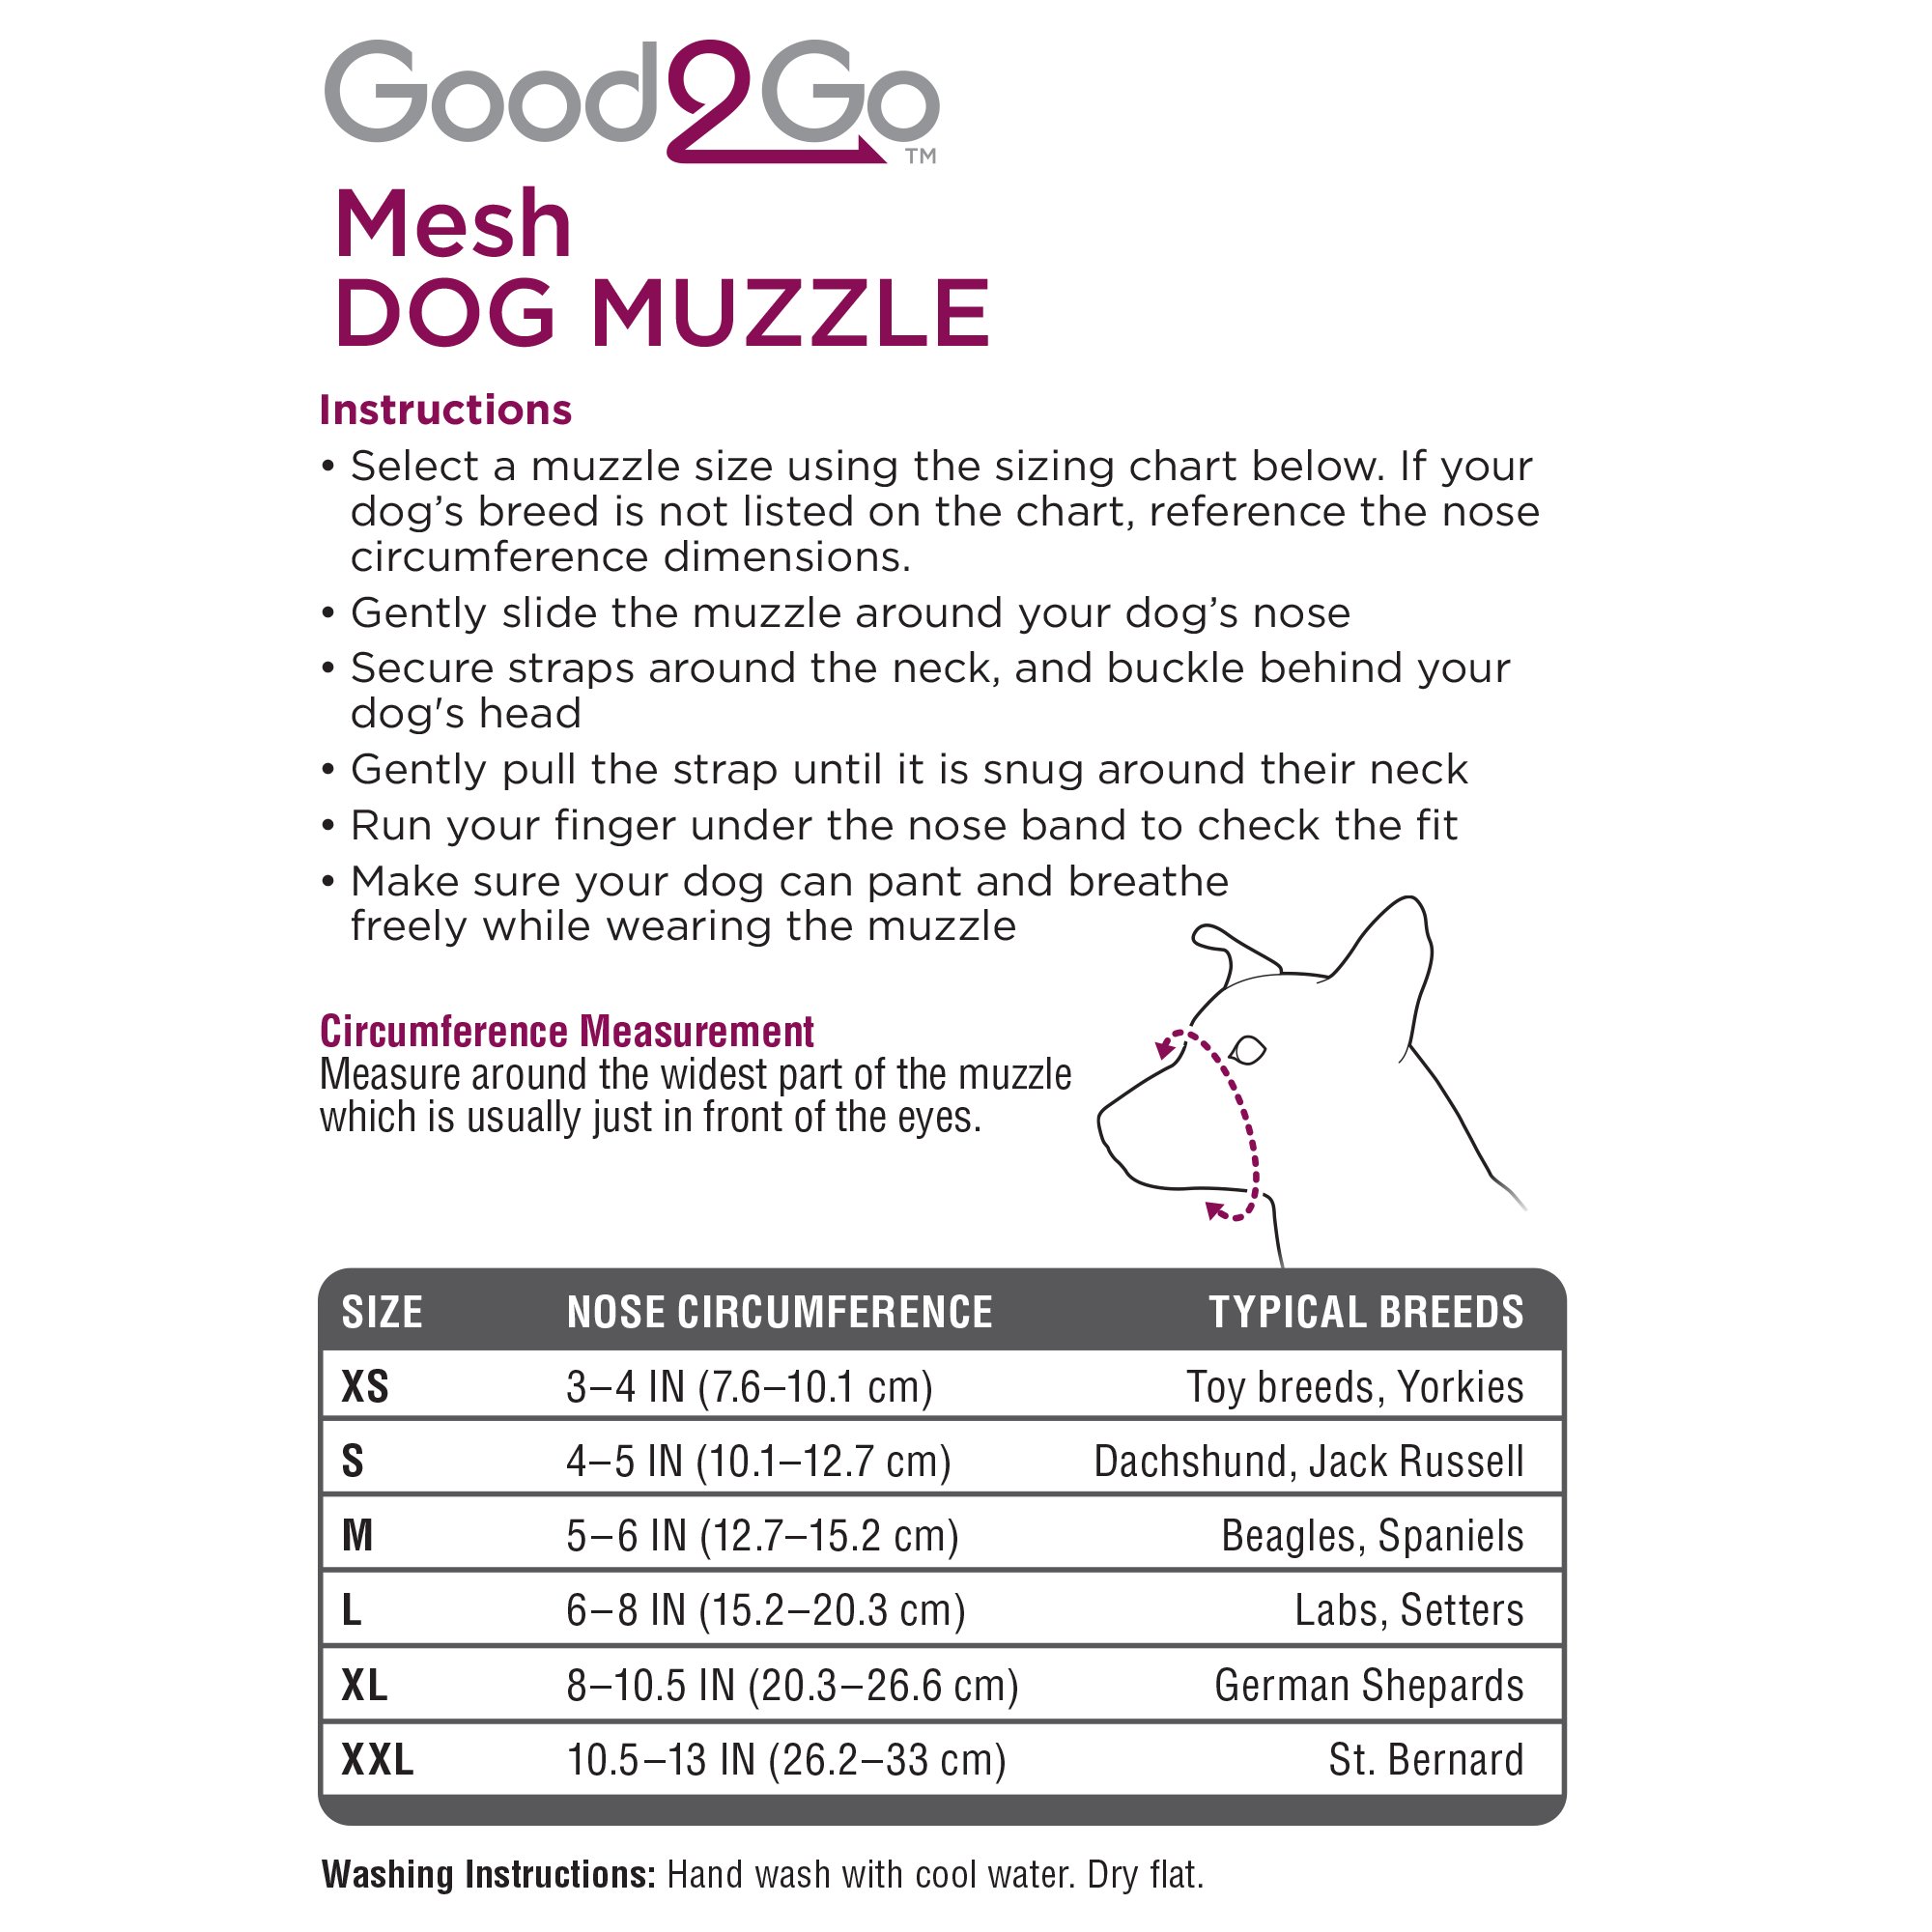 good2go mesh dog muzzle